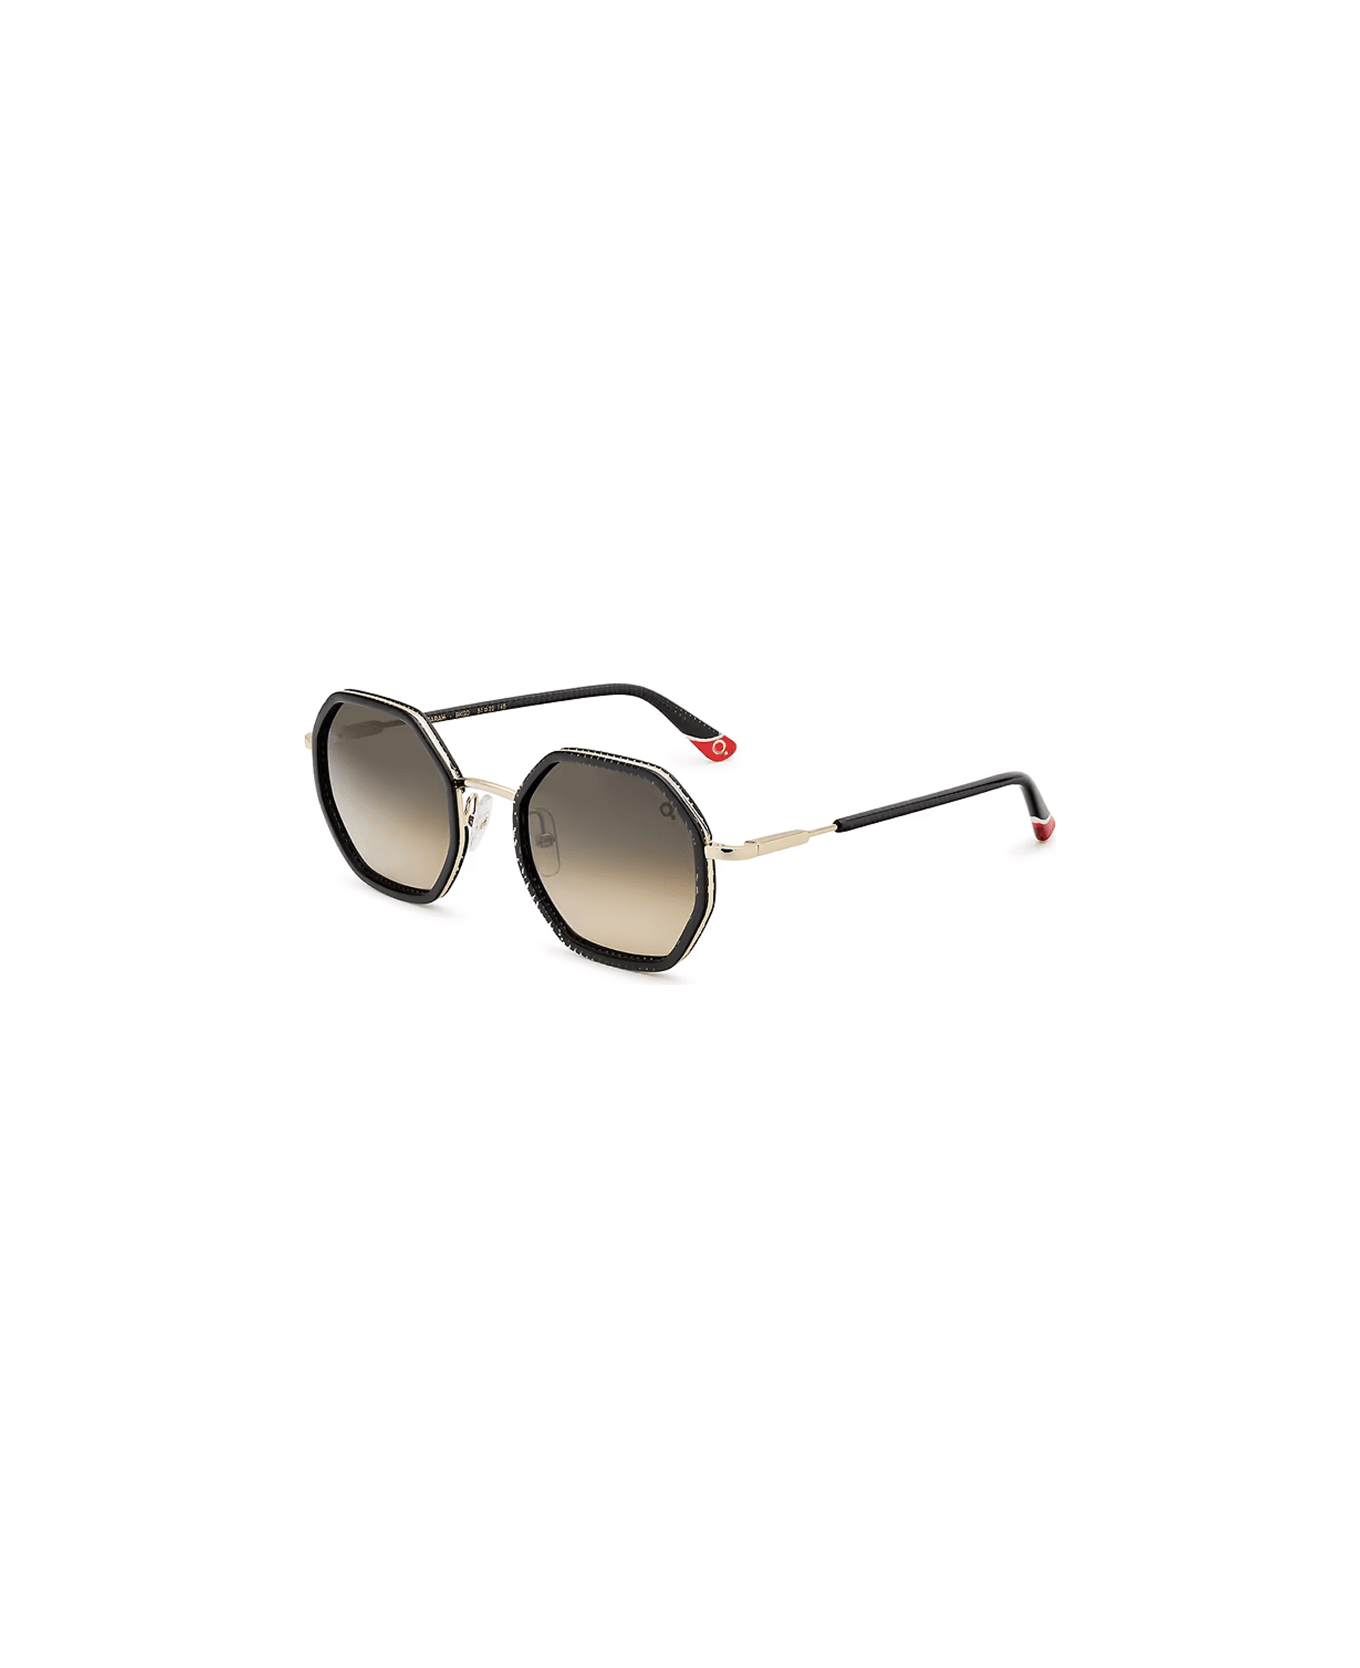 Etnia Barcelona Sunglasses - Multicolor/Marrone